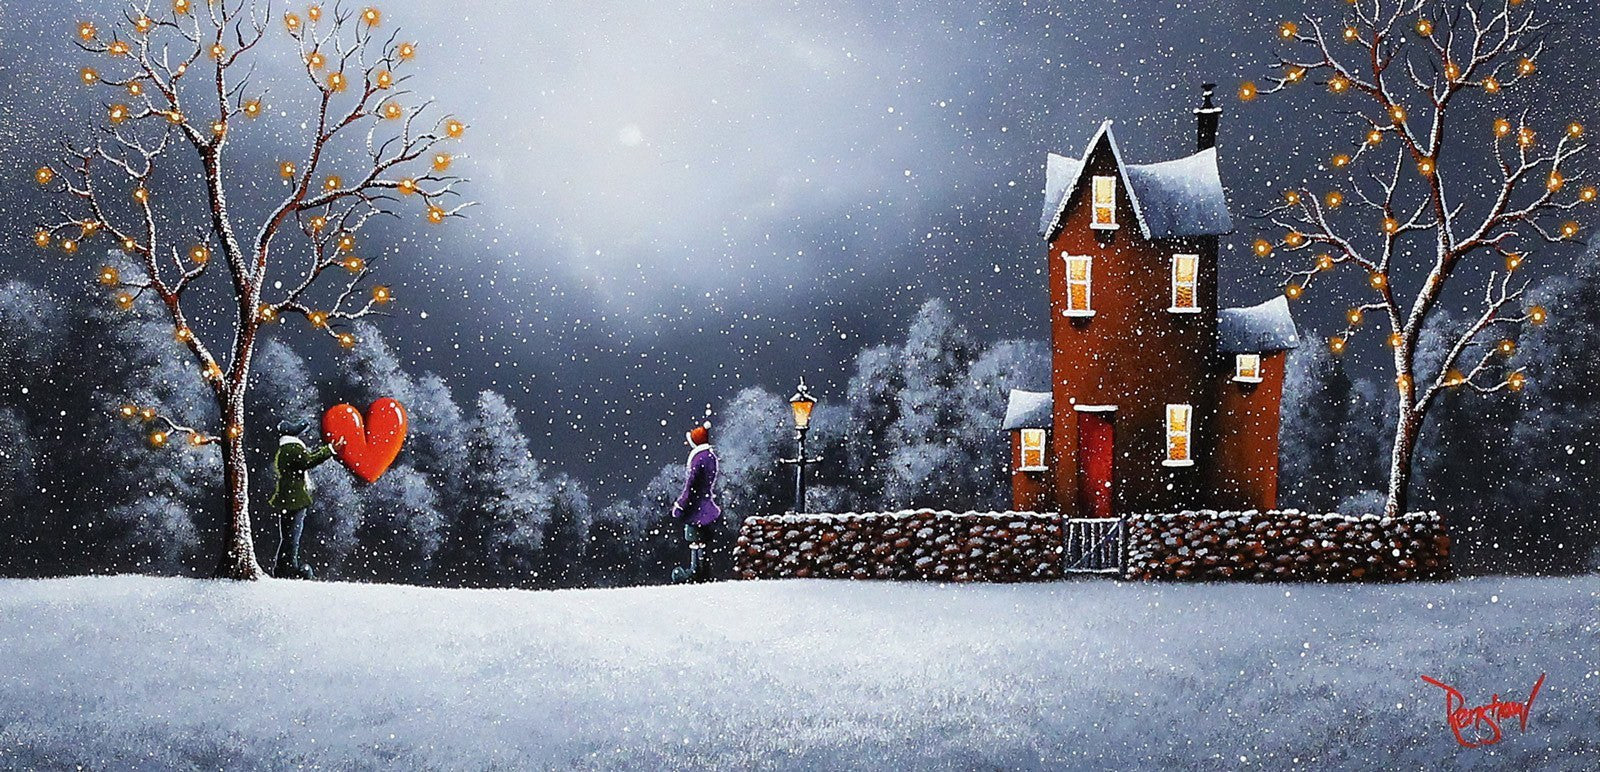 Home for Christmas - SOLD David Renshaw